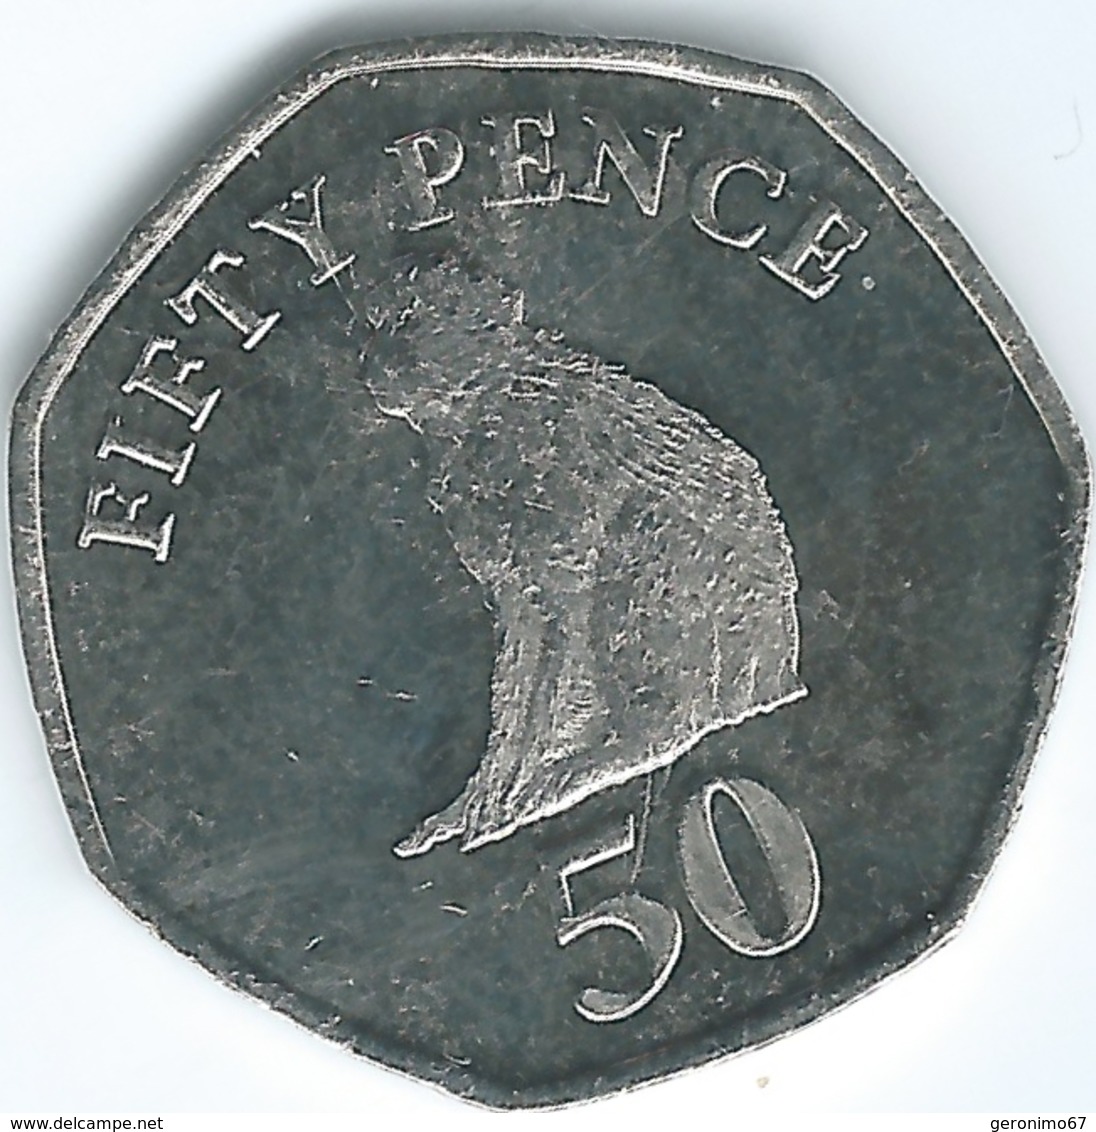 Gibraltar - Elizabeth II - 50 Pence - 2014 - 3rd Portrait - Gibraltar